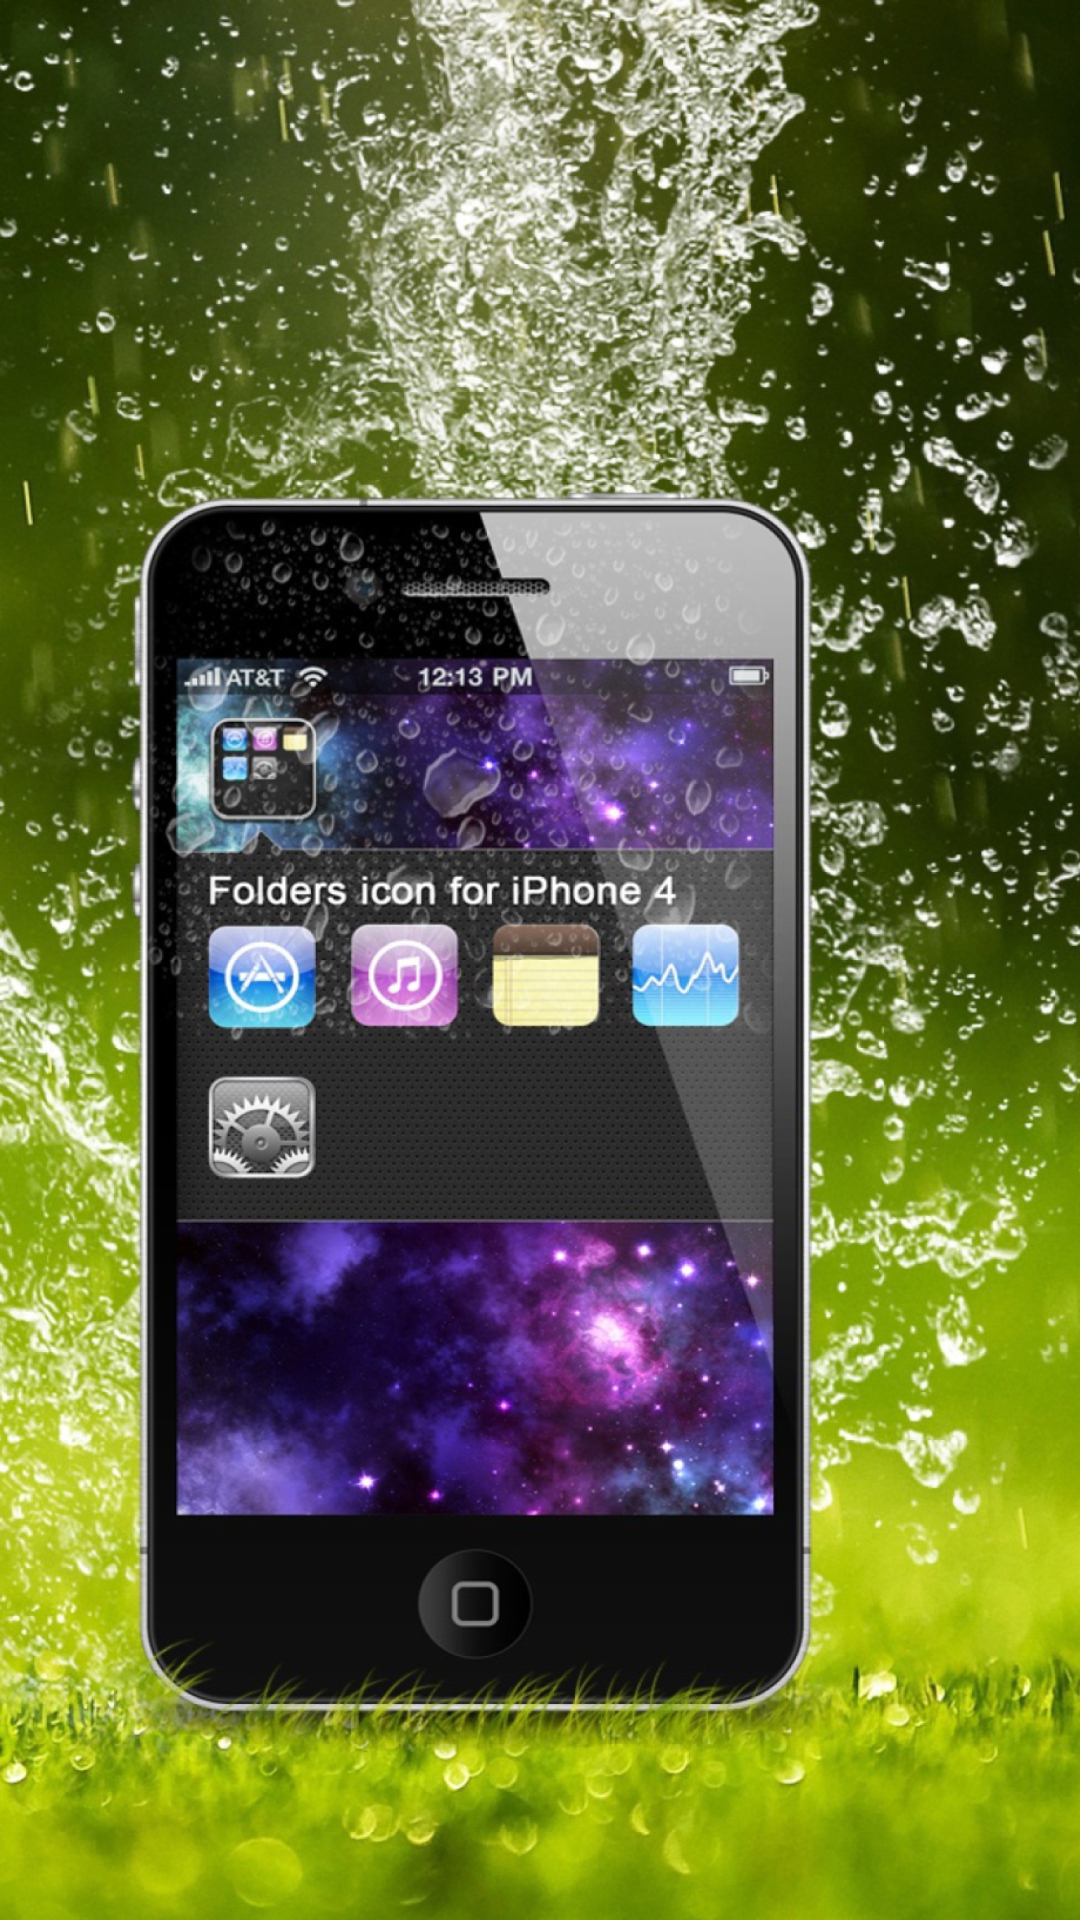 Rain Drops iPhone 4G wallpaper 1080x1920